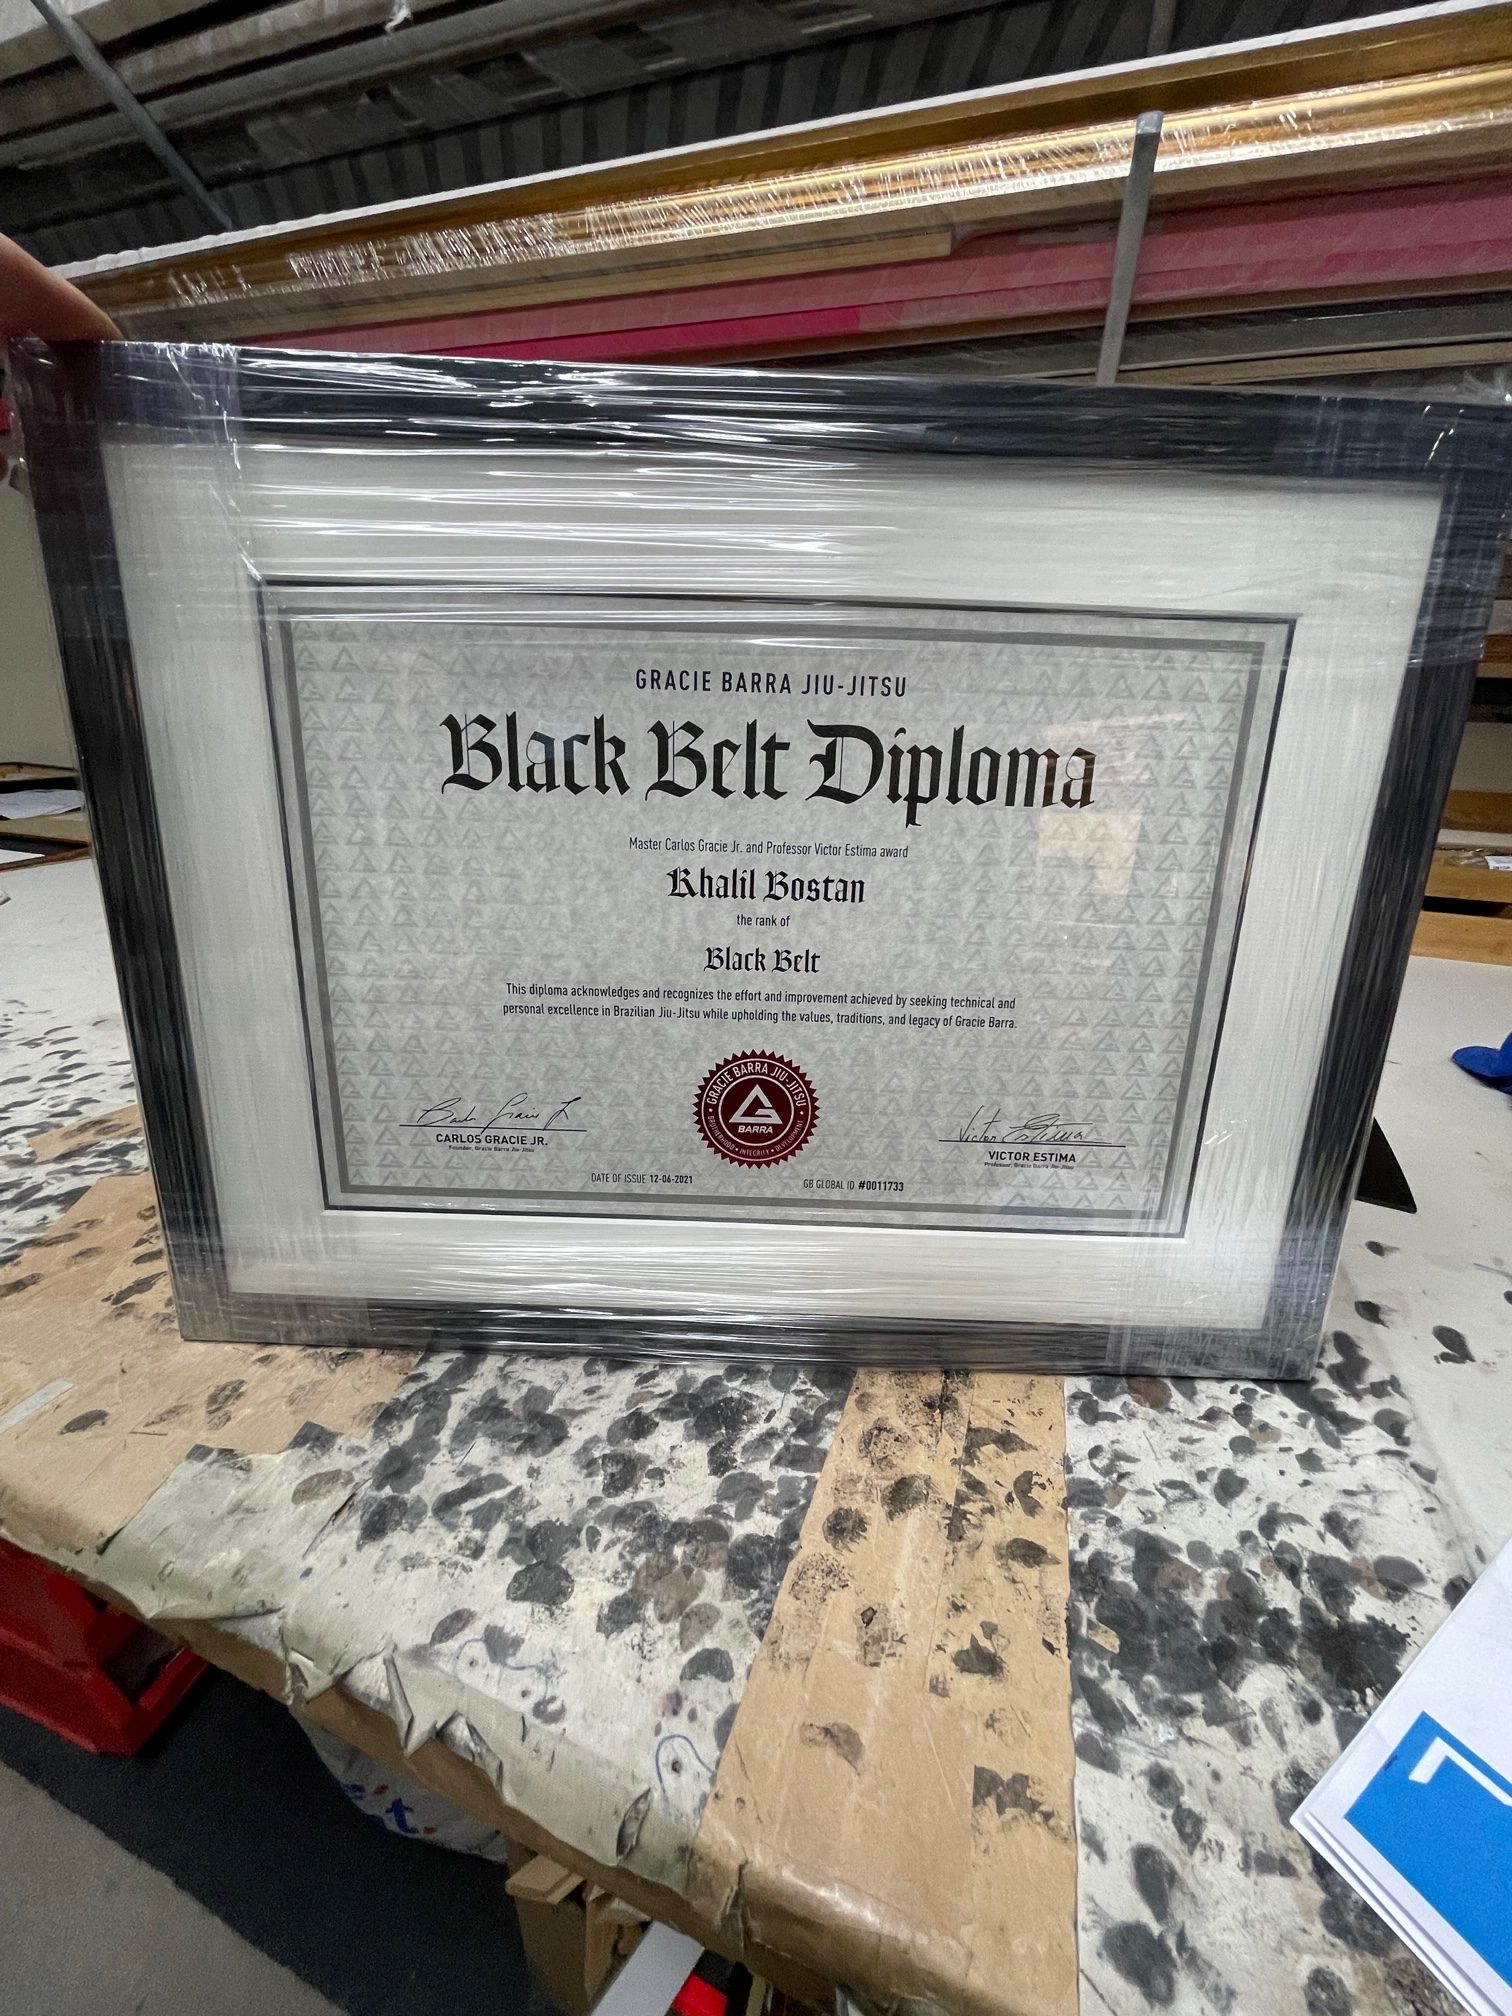 Framed Certificate